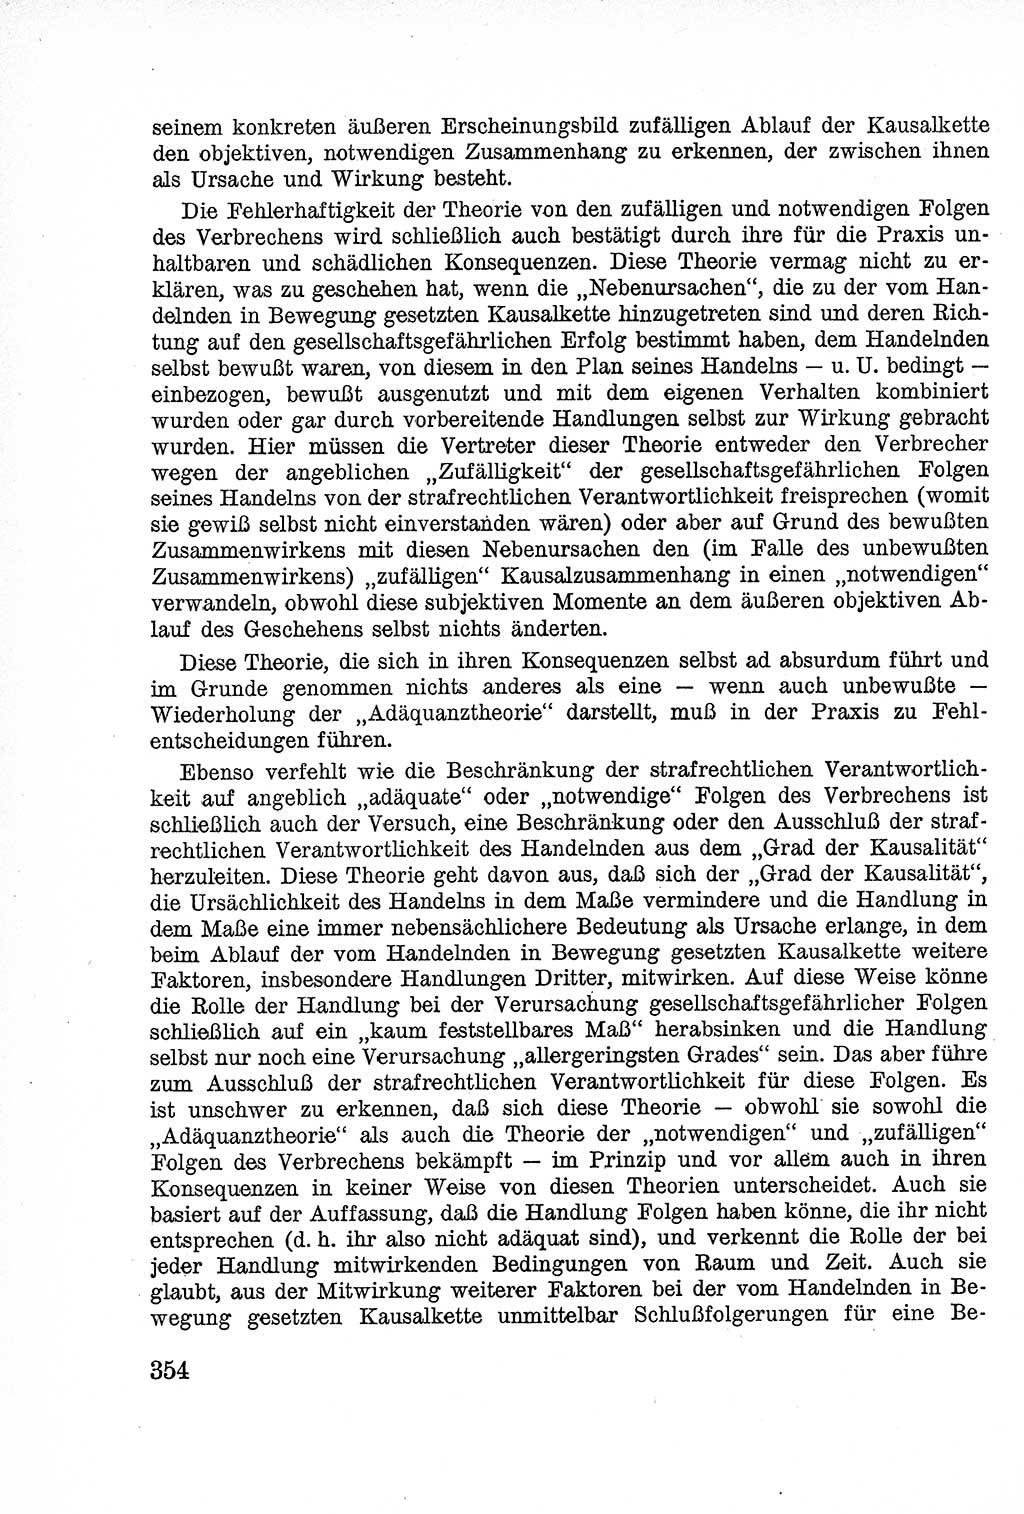 Lehrbuch des Strafrechts der Deutschen Demokratischen Republik (DDR), Allgemeiner Teil 1957, Seite 354 (Lb. Strafr. DDR AT 1957, S. 354)